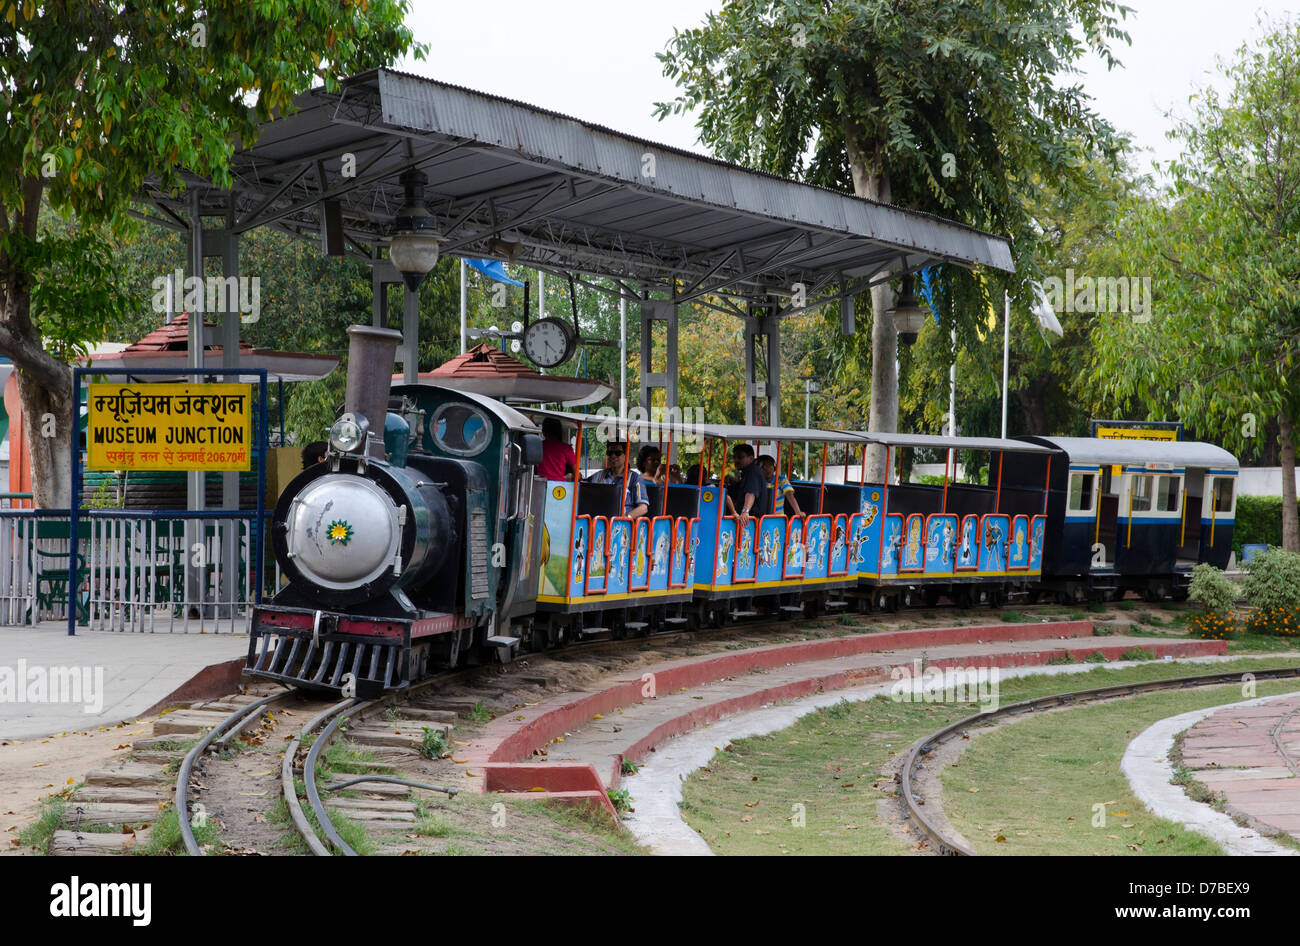 Petit train touristique,moteur,diesel,randonnée,passagers,jonction Musée National Railway Museum, New Delhi, Inde Banque D'Images